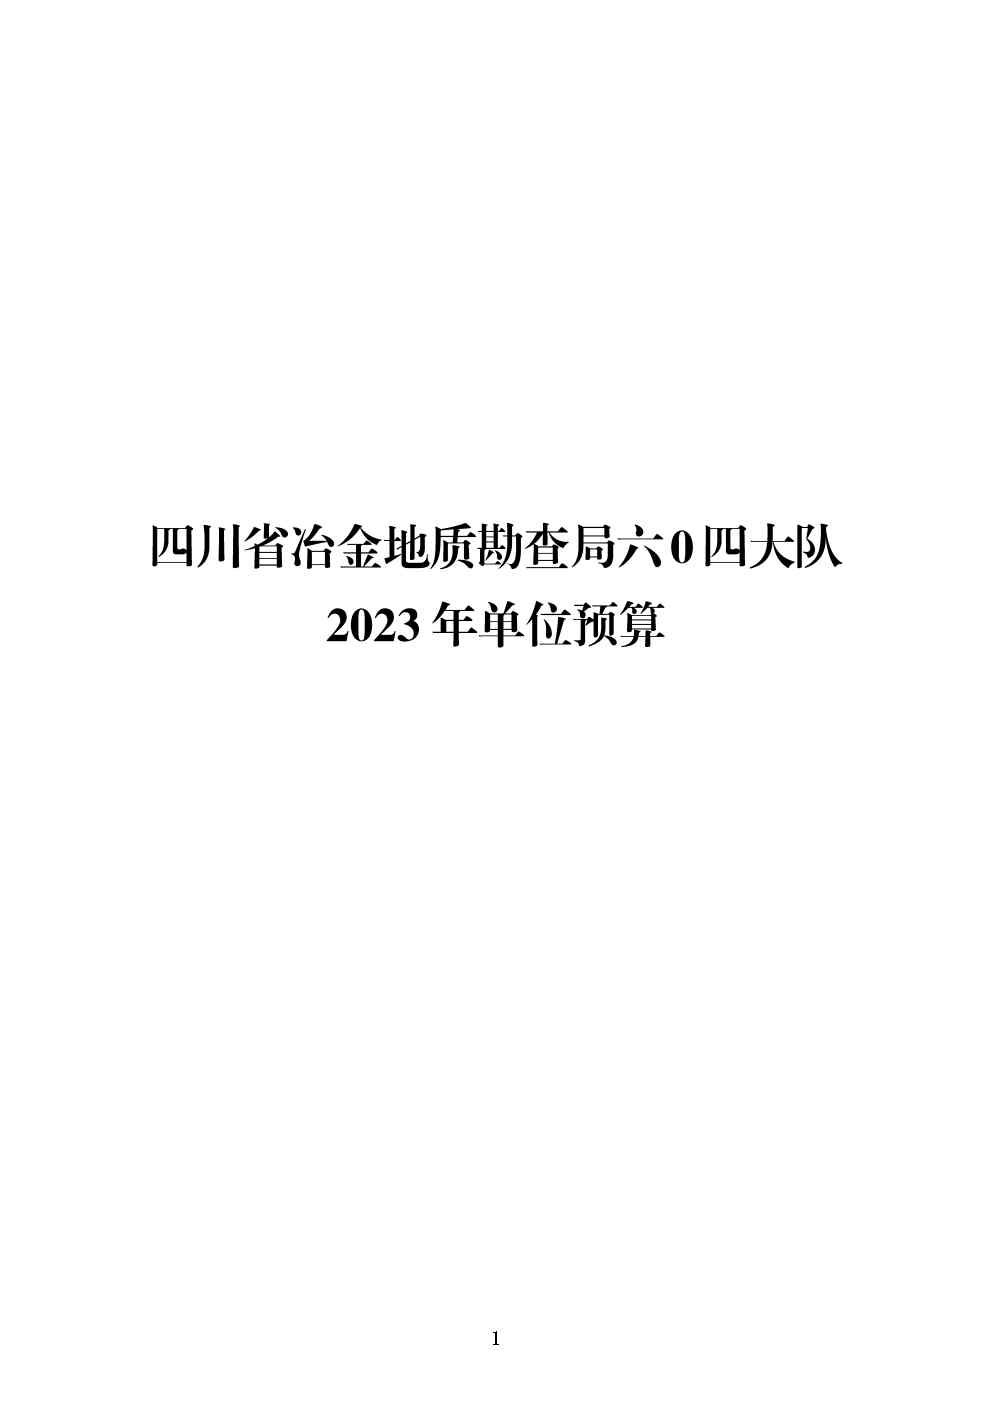 四川省冶金地质勘查局六〇四大队2023年单位预算